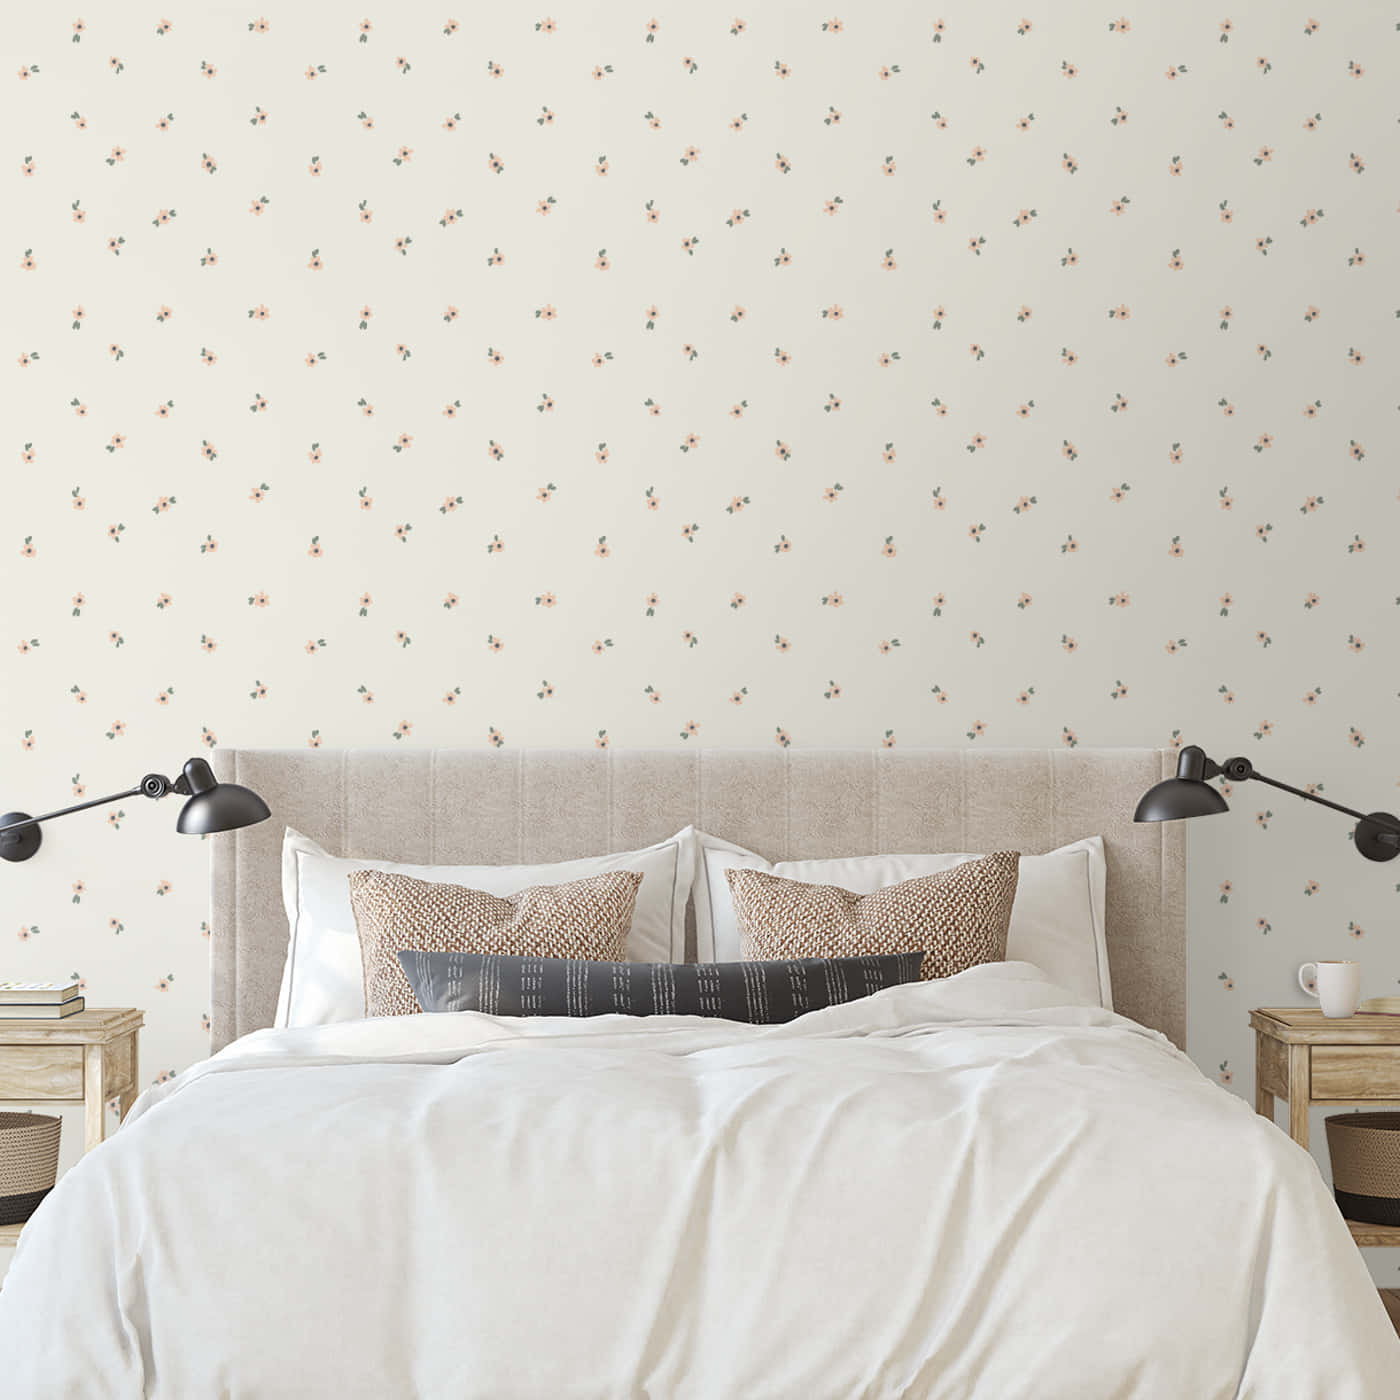 Periwinkle Floral Bedroom Aesthetic Wallpaper